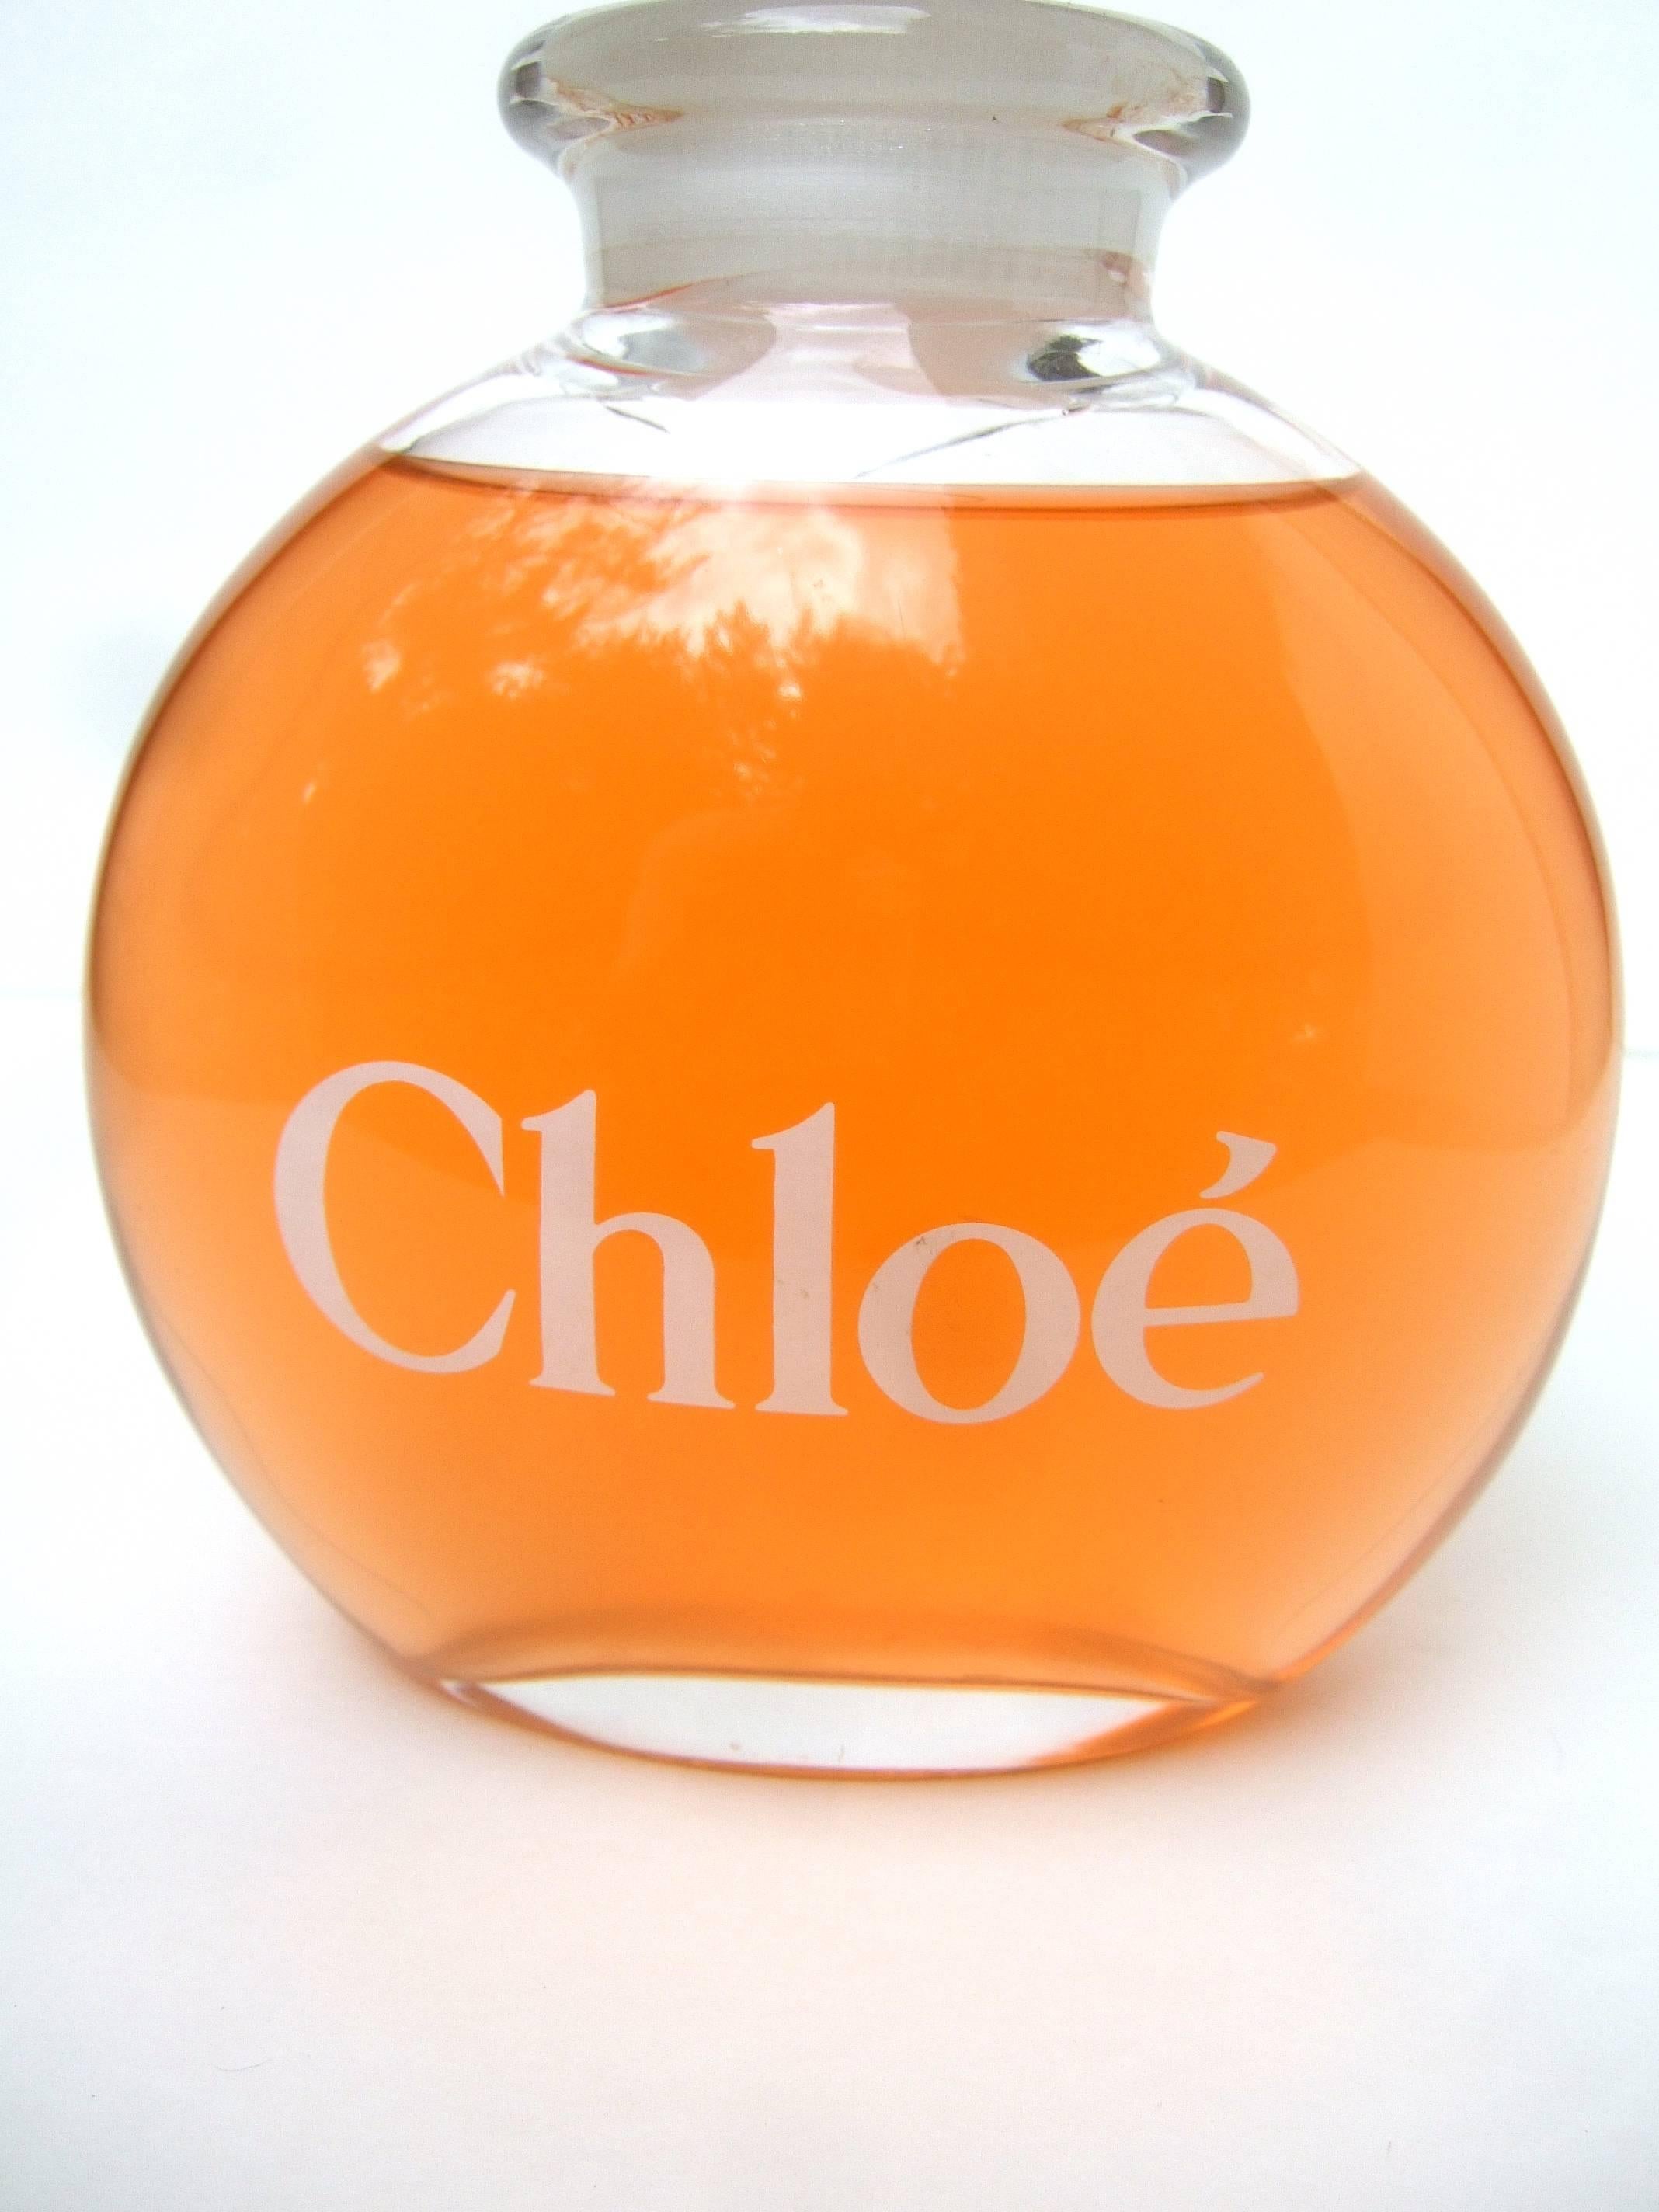 chloe bottles